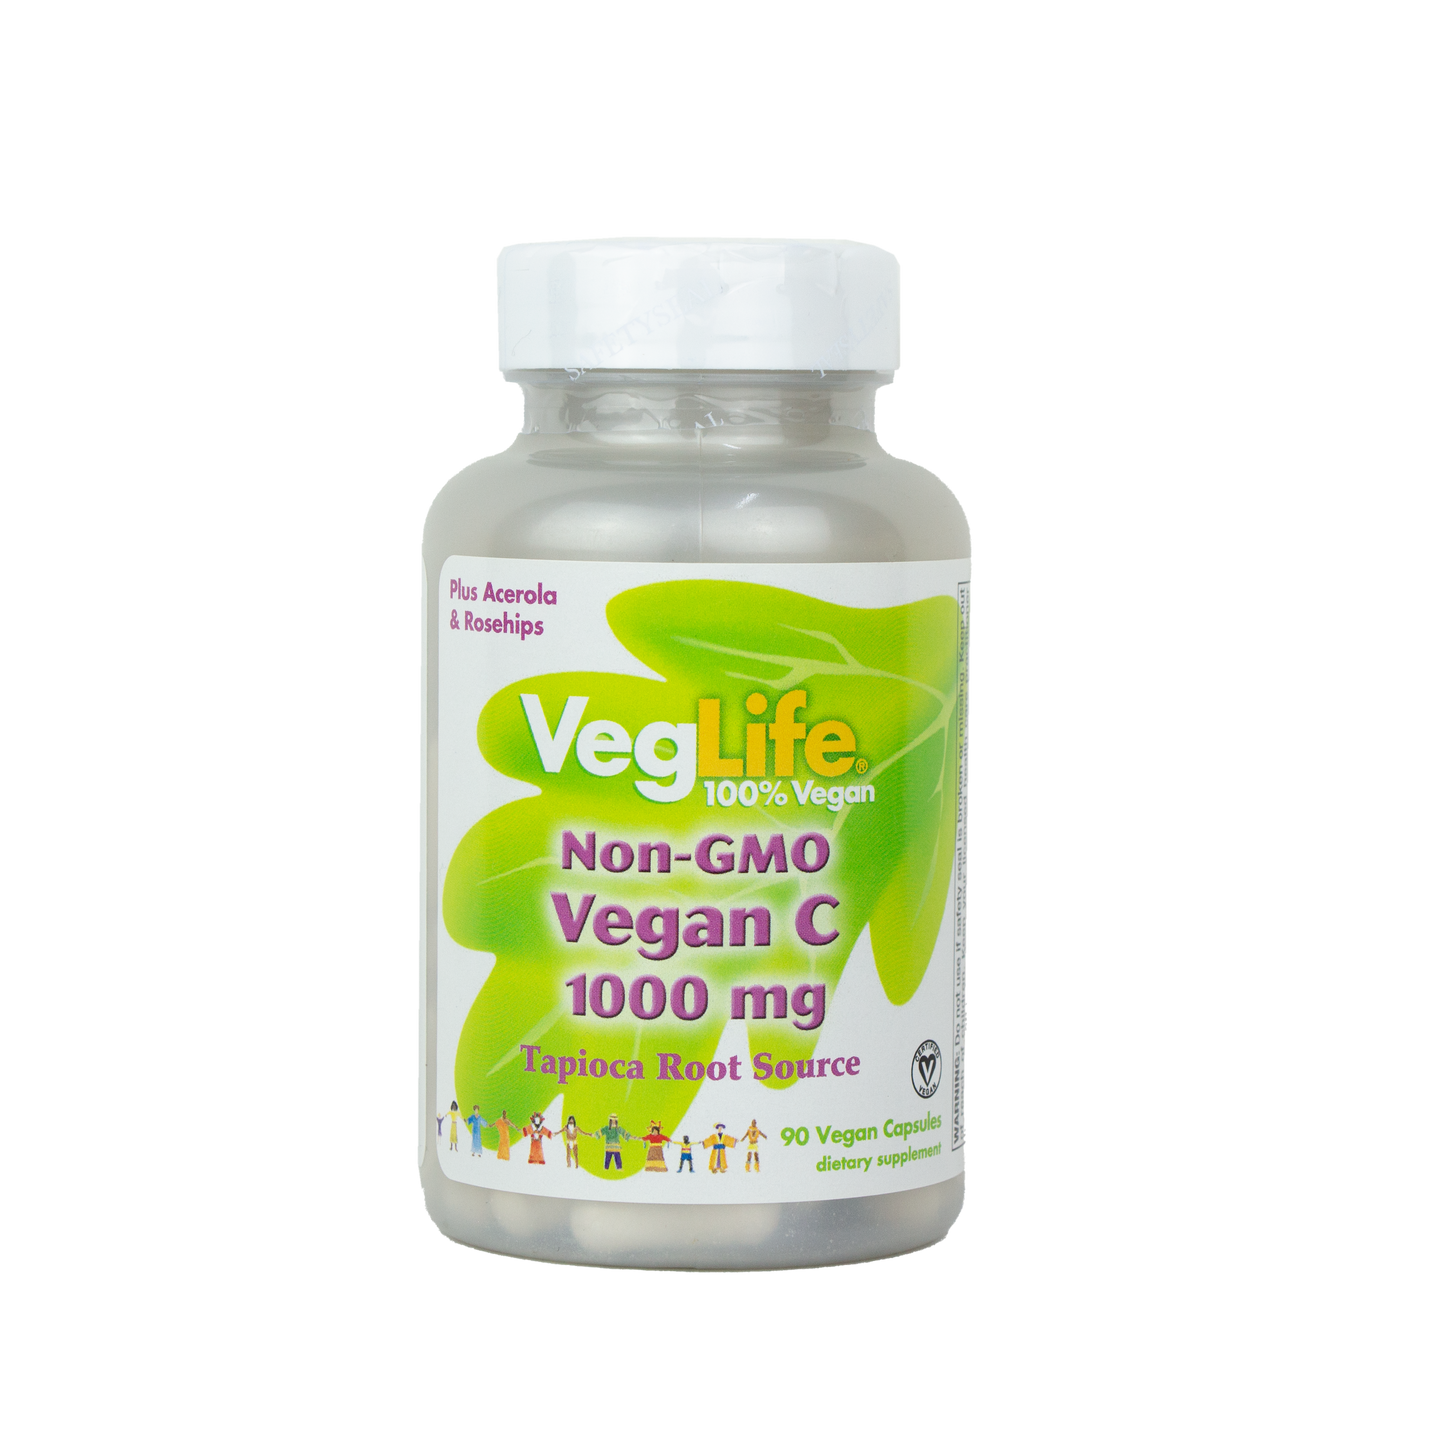 Veg Life- Non-GMO Vegan C 1000mg